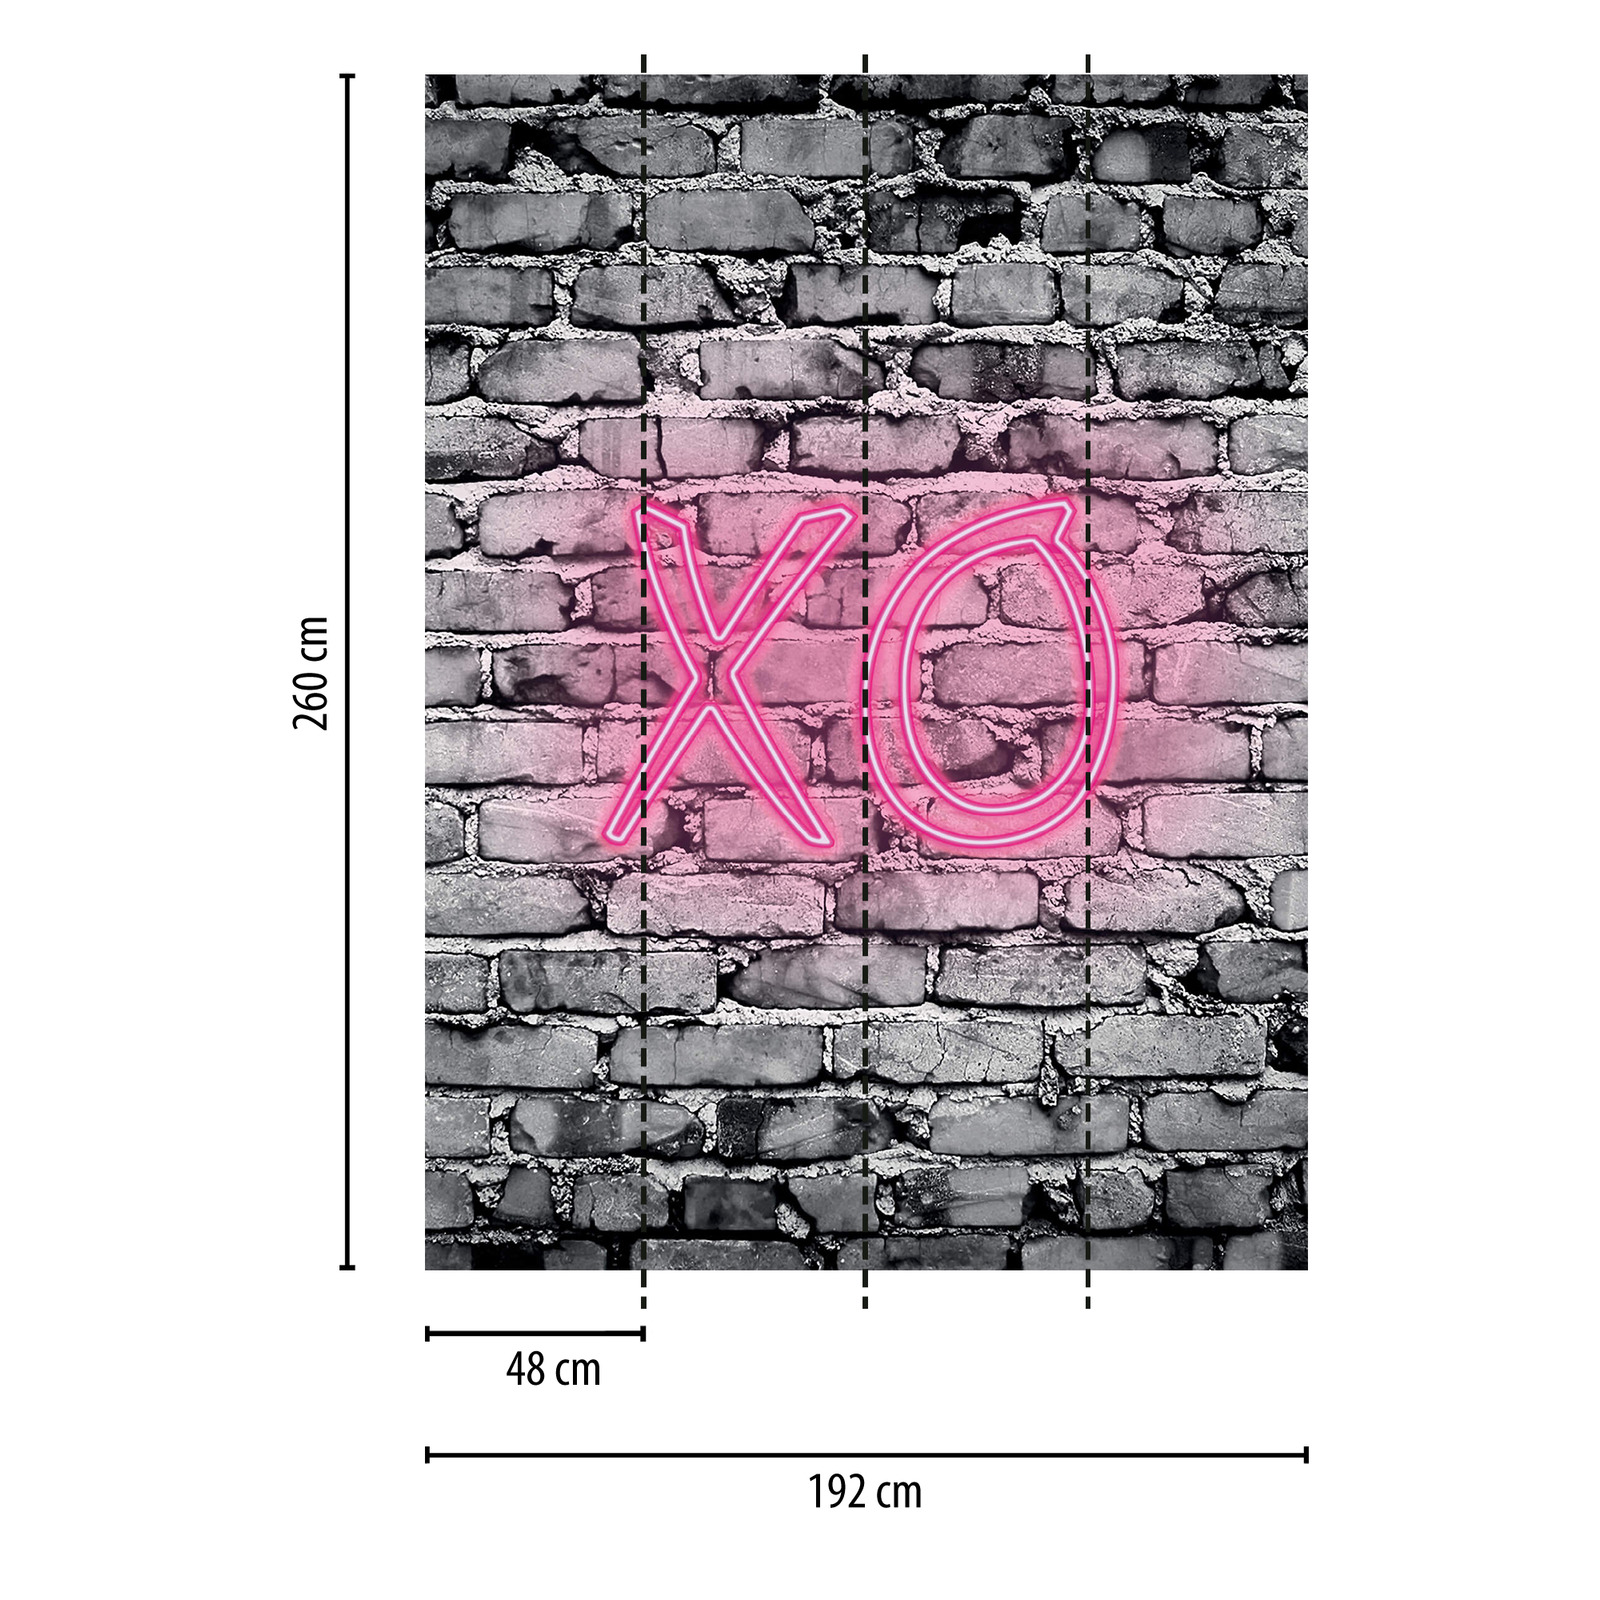             narrow mural illuminated letters XO on stone wall
        